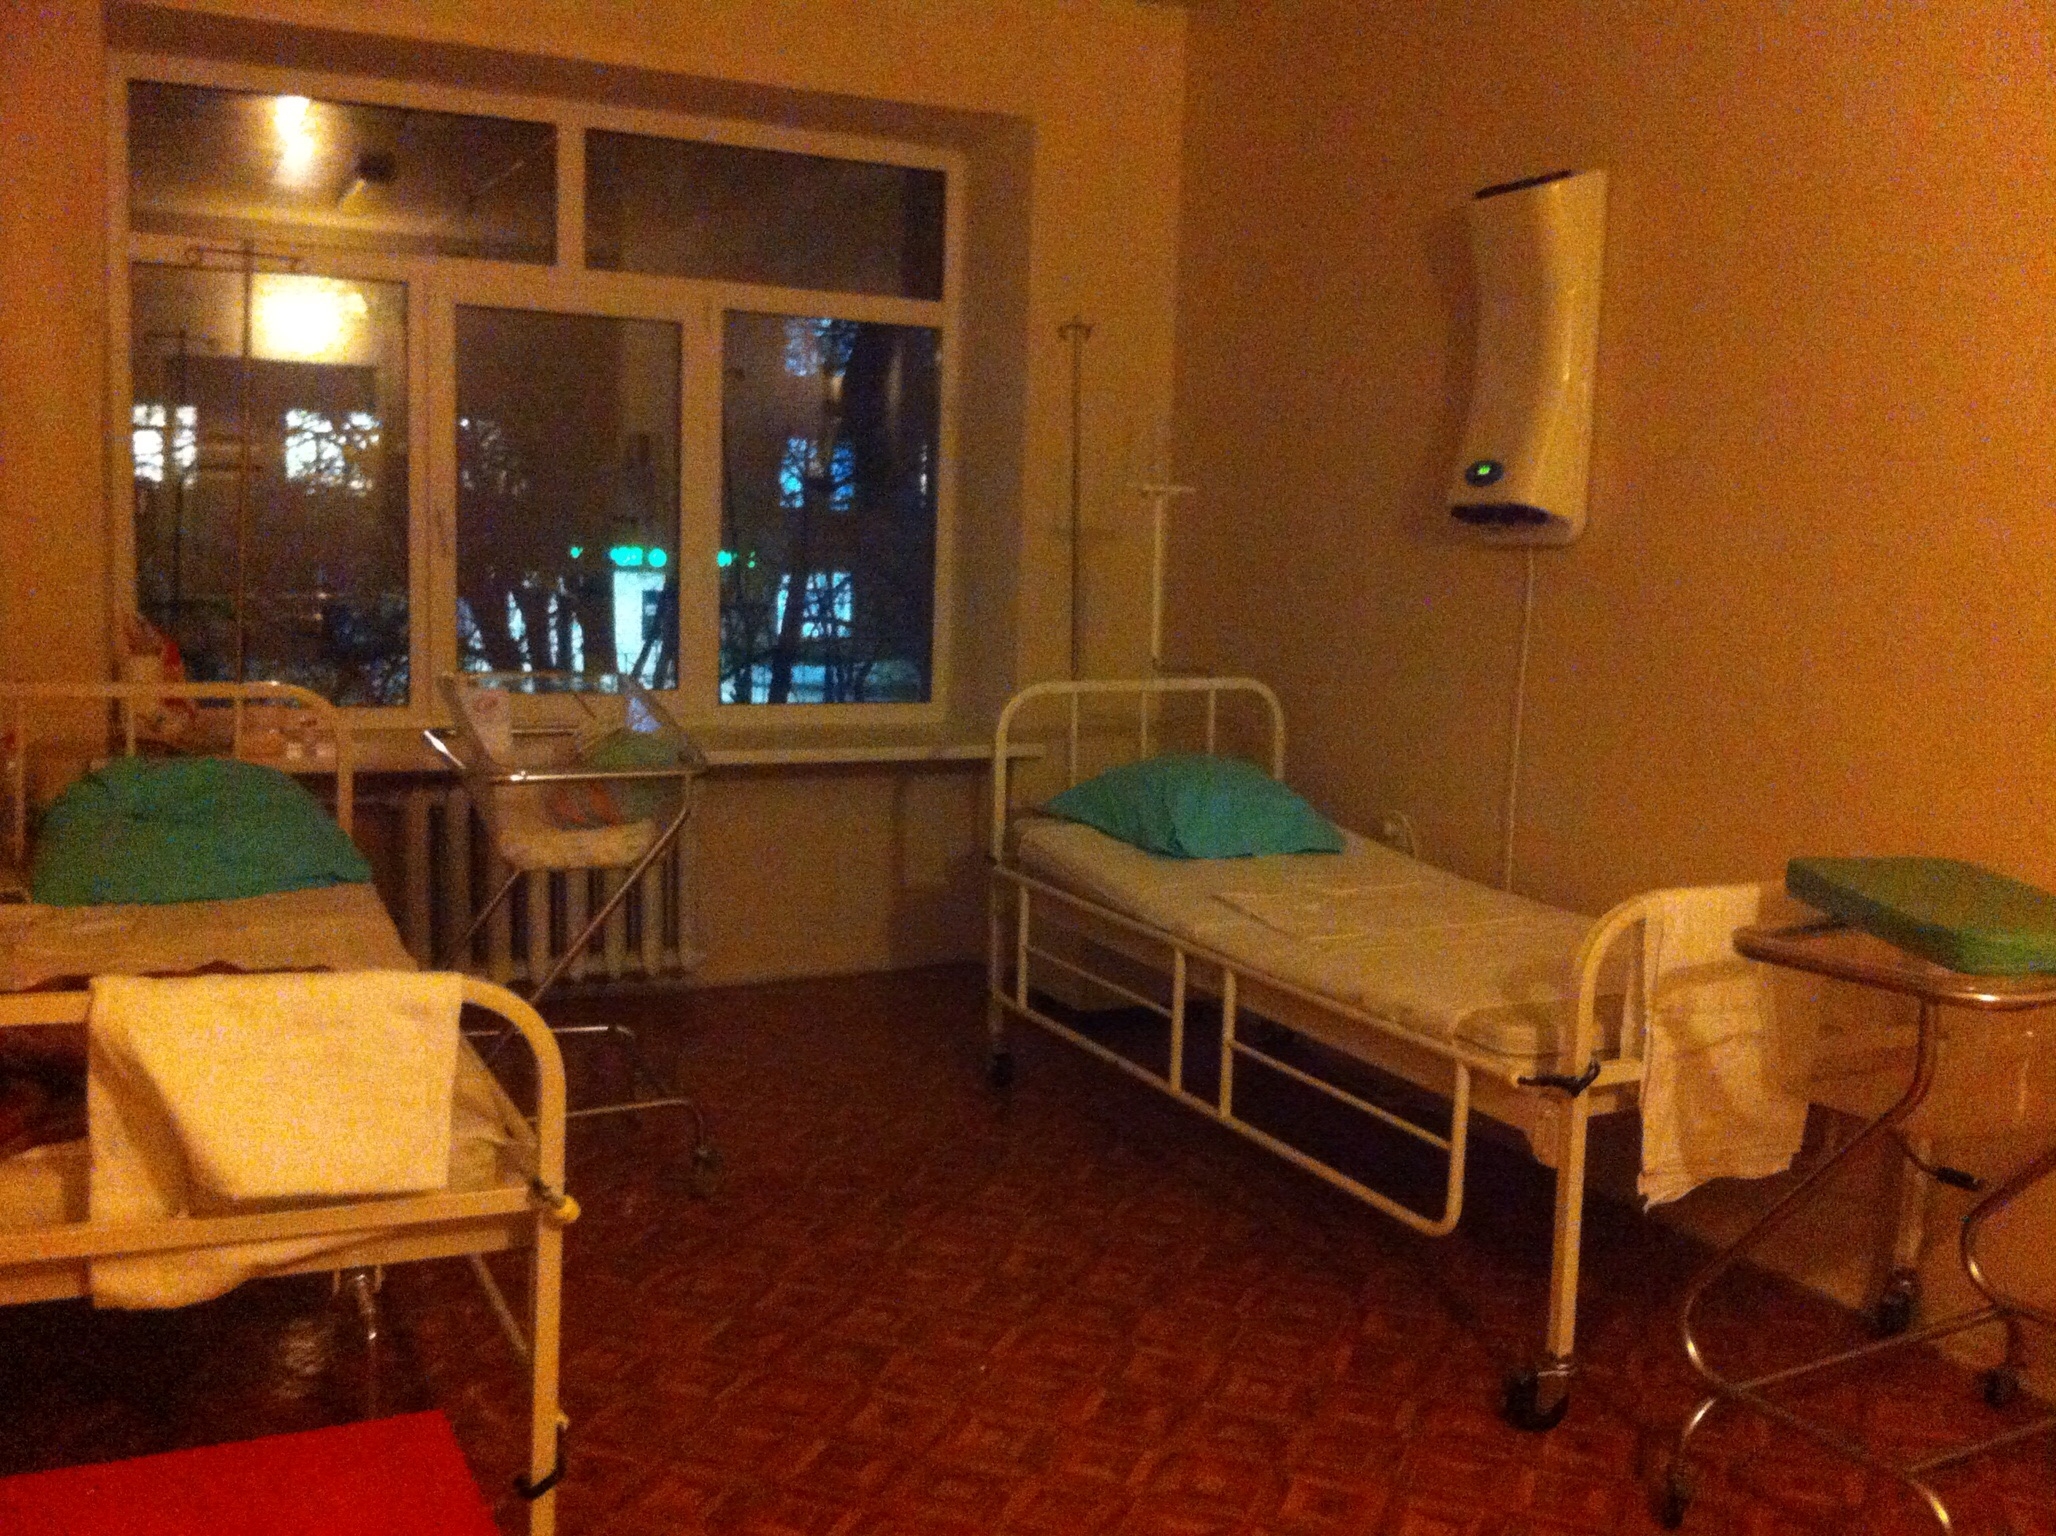 Фото больницы внутри в палате